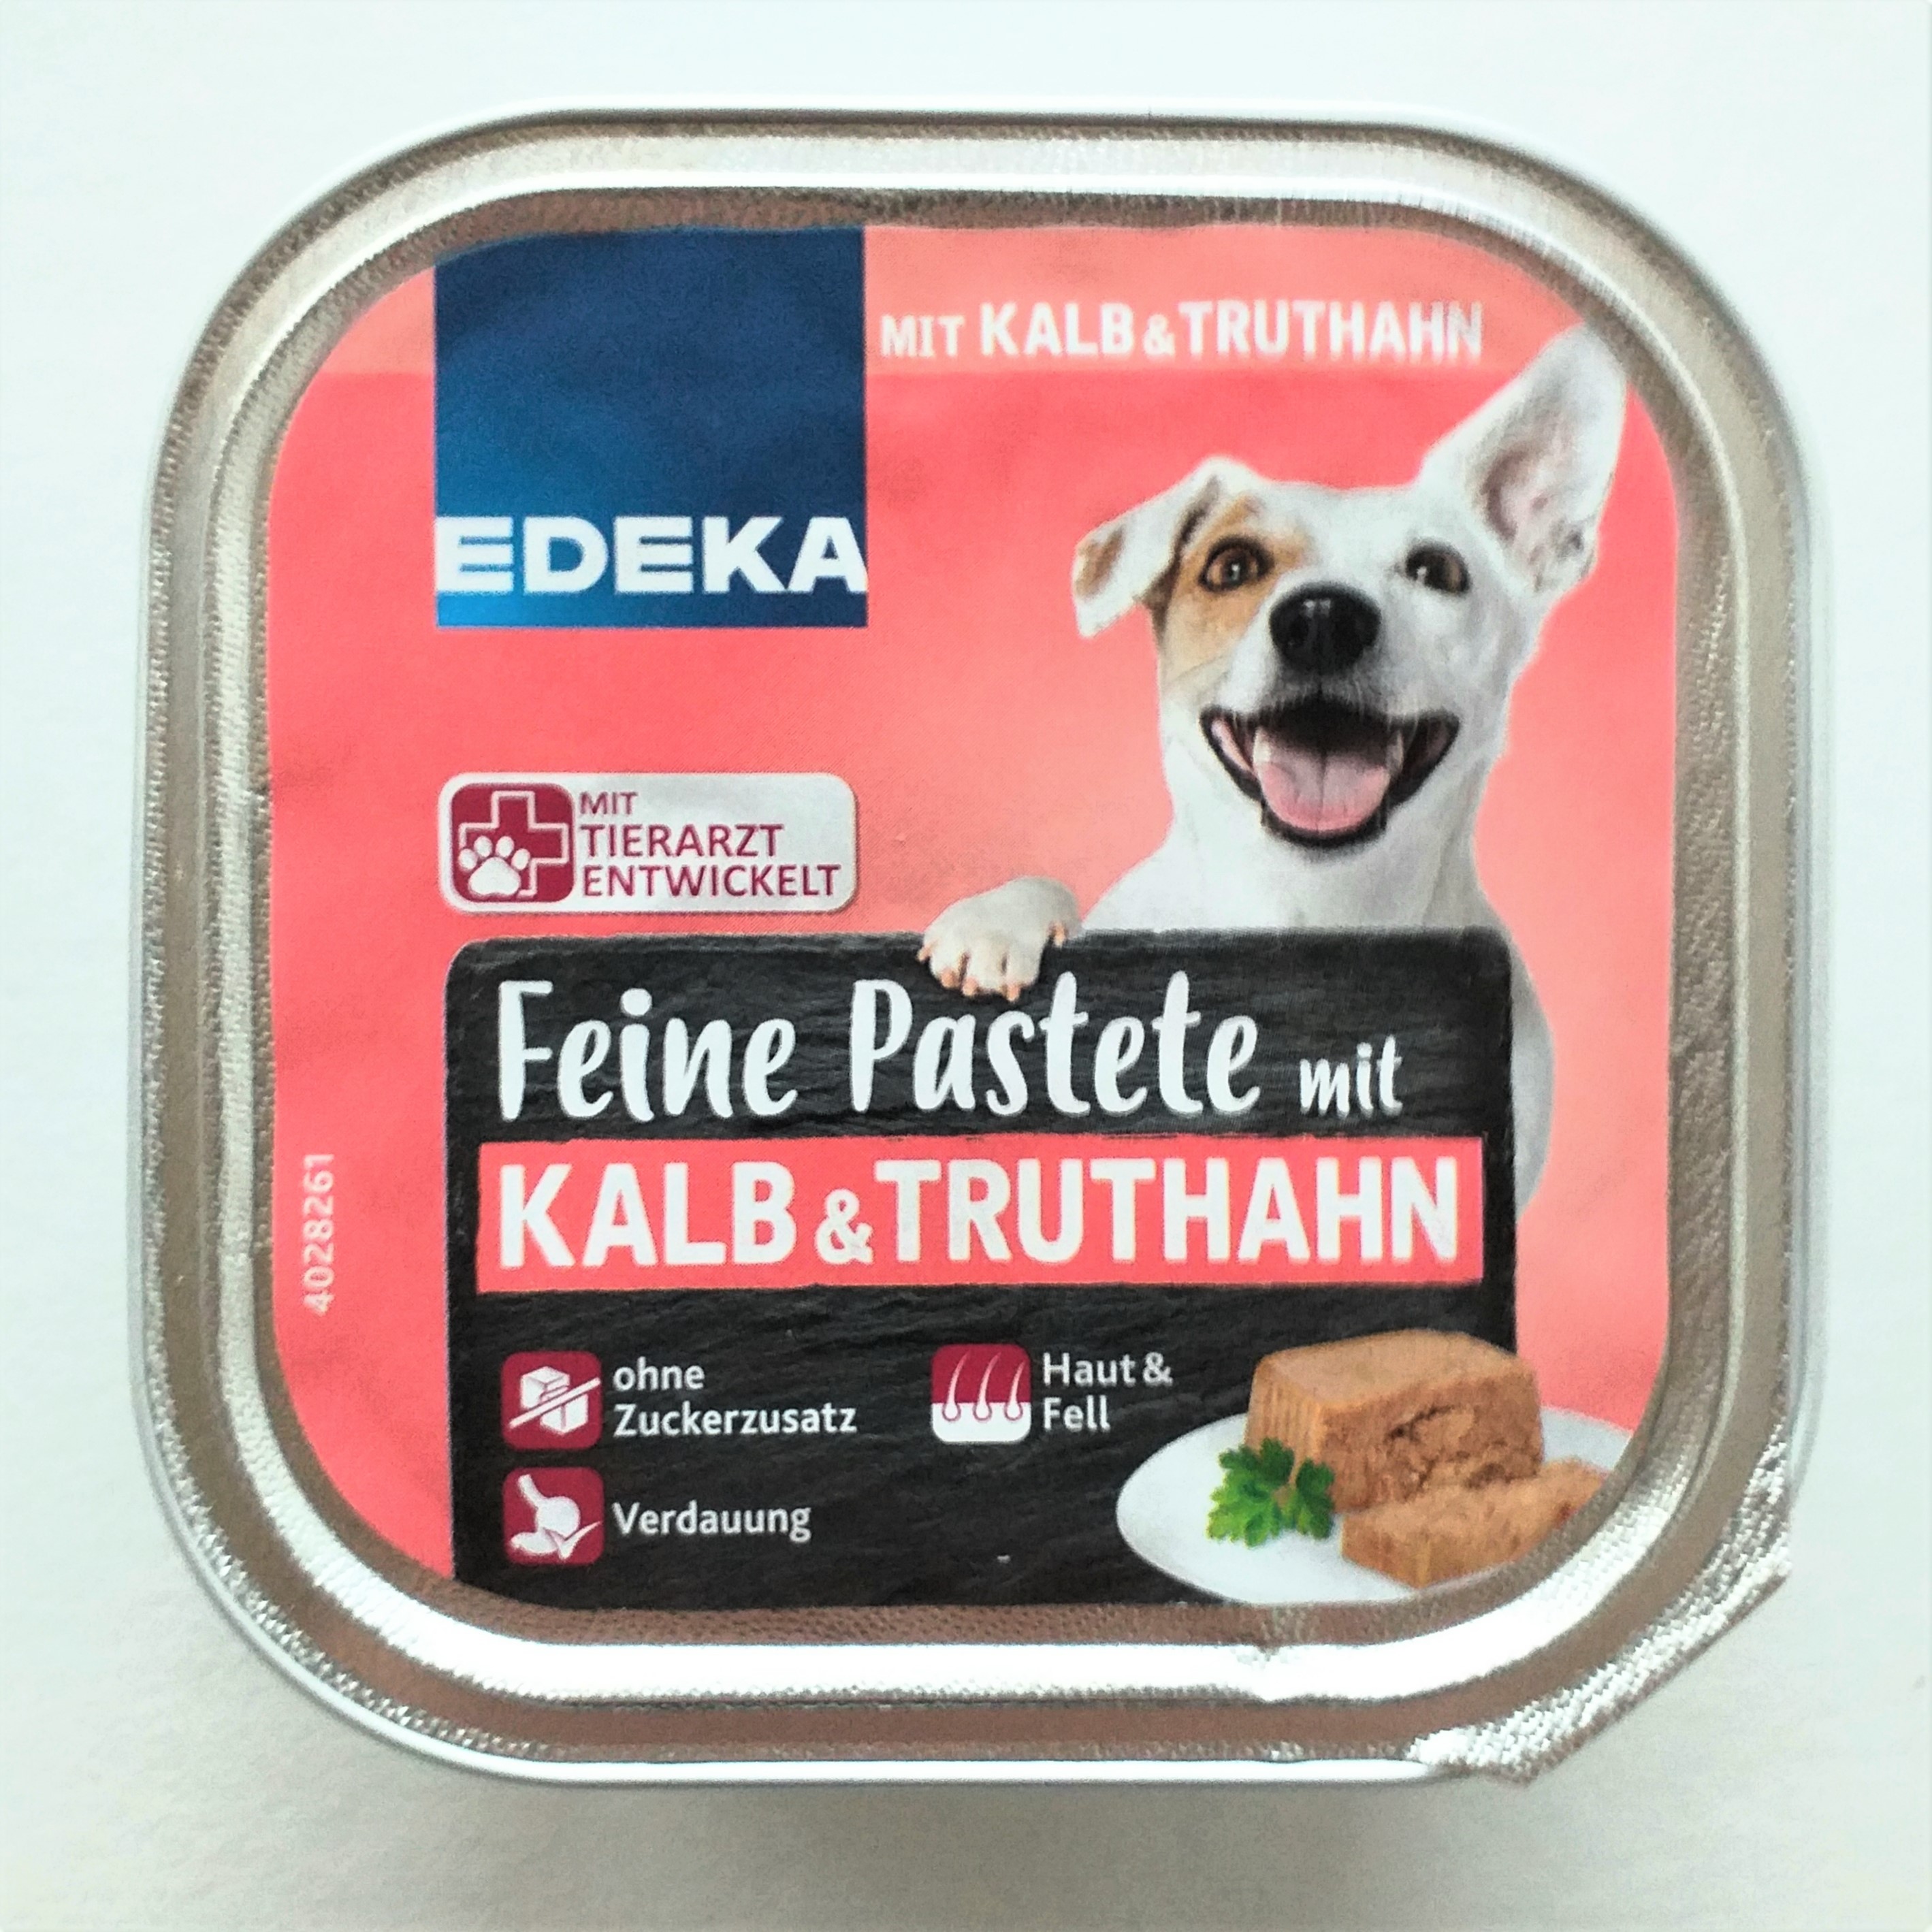 EDEKA Feine Pastete Kalb und Truthahn 11 x 150g Packung 